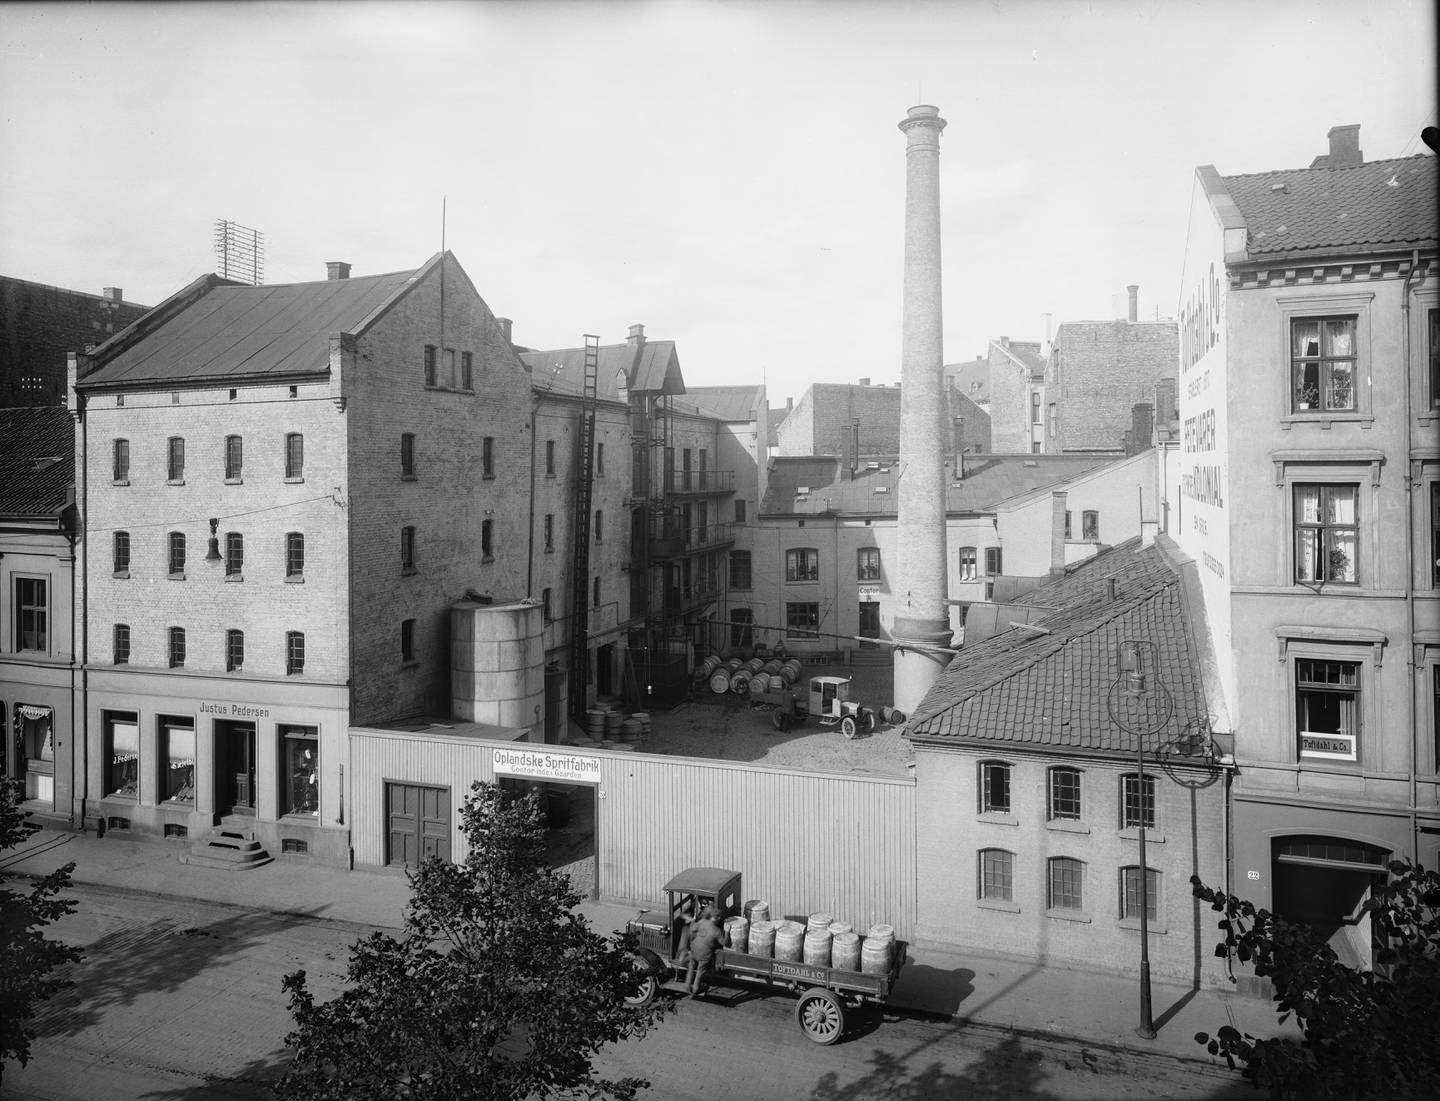 I 1925 kjøpte Vinmonopolet samtlige aksjer i Oplandske Spritfabriks destilleri i Stenersgata 20. Da Vinmonoplet kjøpte Løiten Brænderis Destillition i 1927 var alle destillerier samlet på en hånd, men brennerier og gjærspritfabrikkene var fortsatt private bedrifter. Bildet viser Oplandske spritfabrikk i 1925.